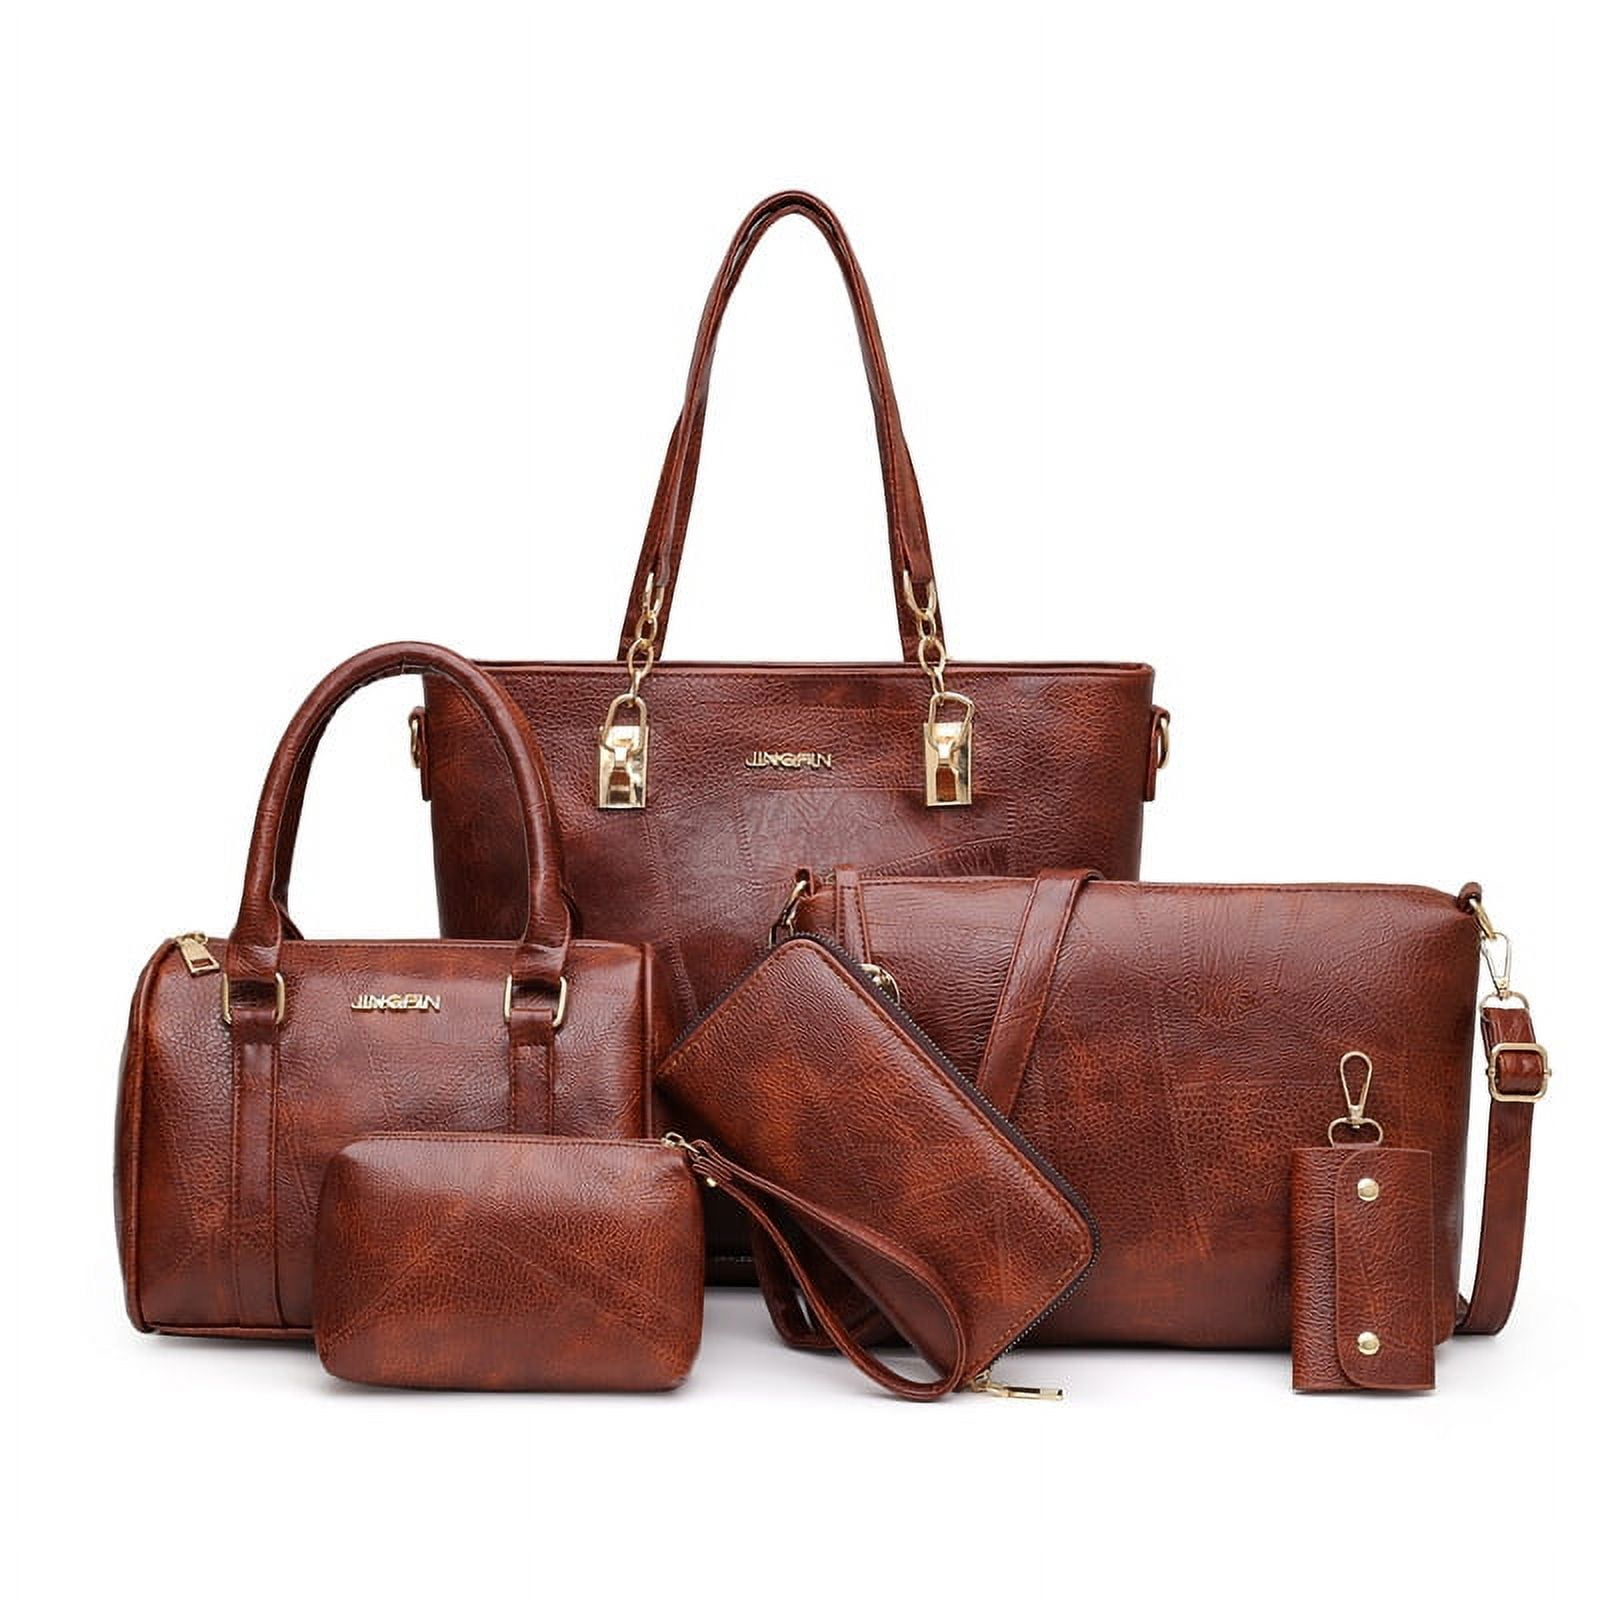 Andiamo leather handle clutch bag | LuisaWorld